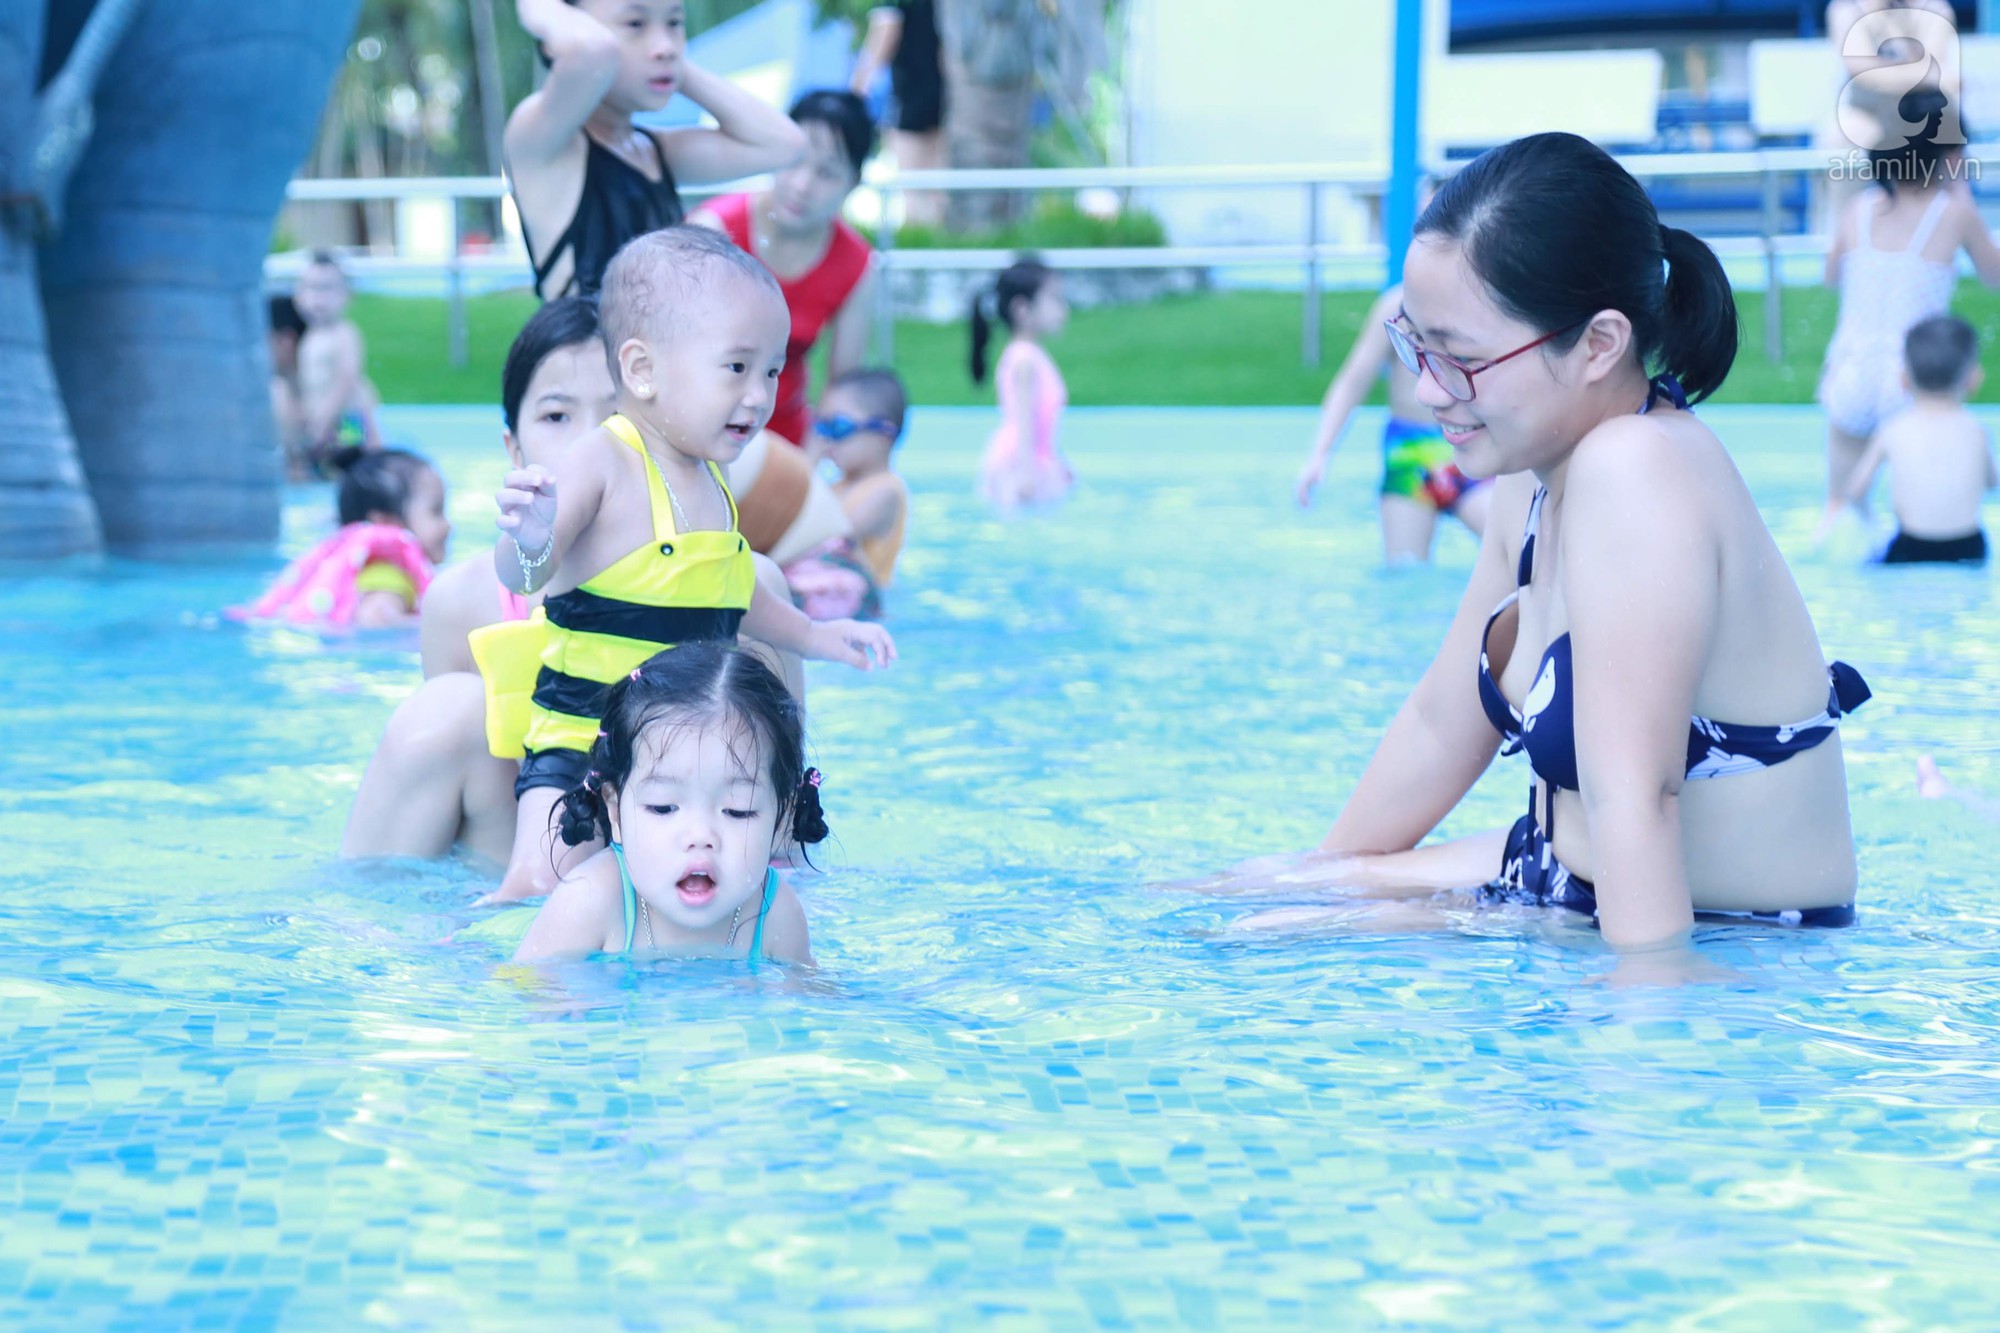 Chùm ảnh: Dân tình thỏa sức vùng vẫy giải nhiệt tại “bể bơi” lớn nhất Hà Nội - Ảnh 5.